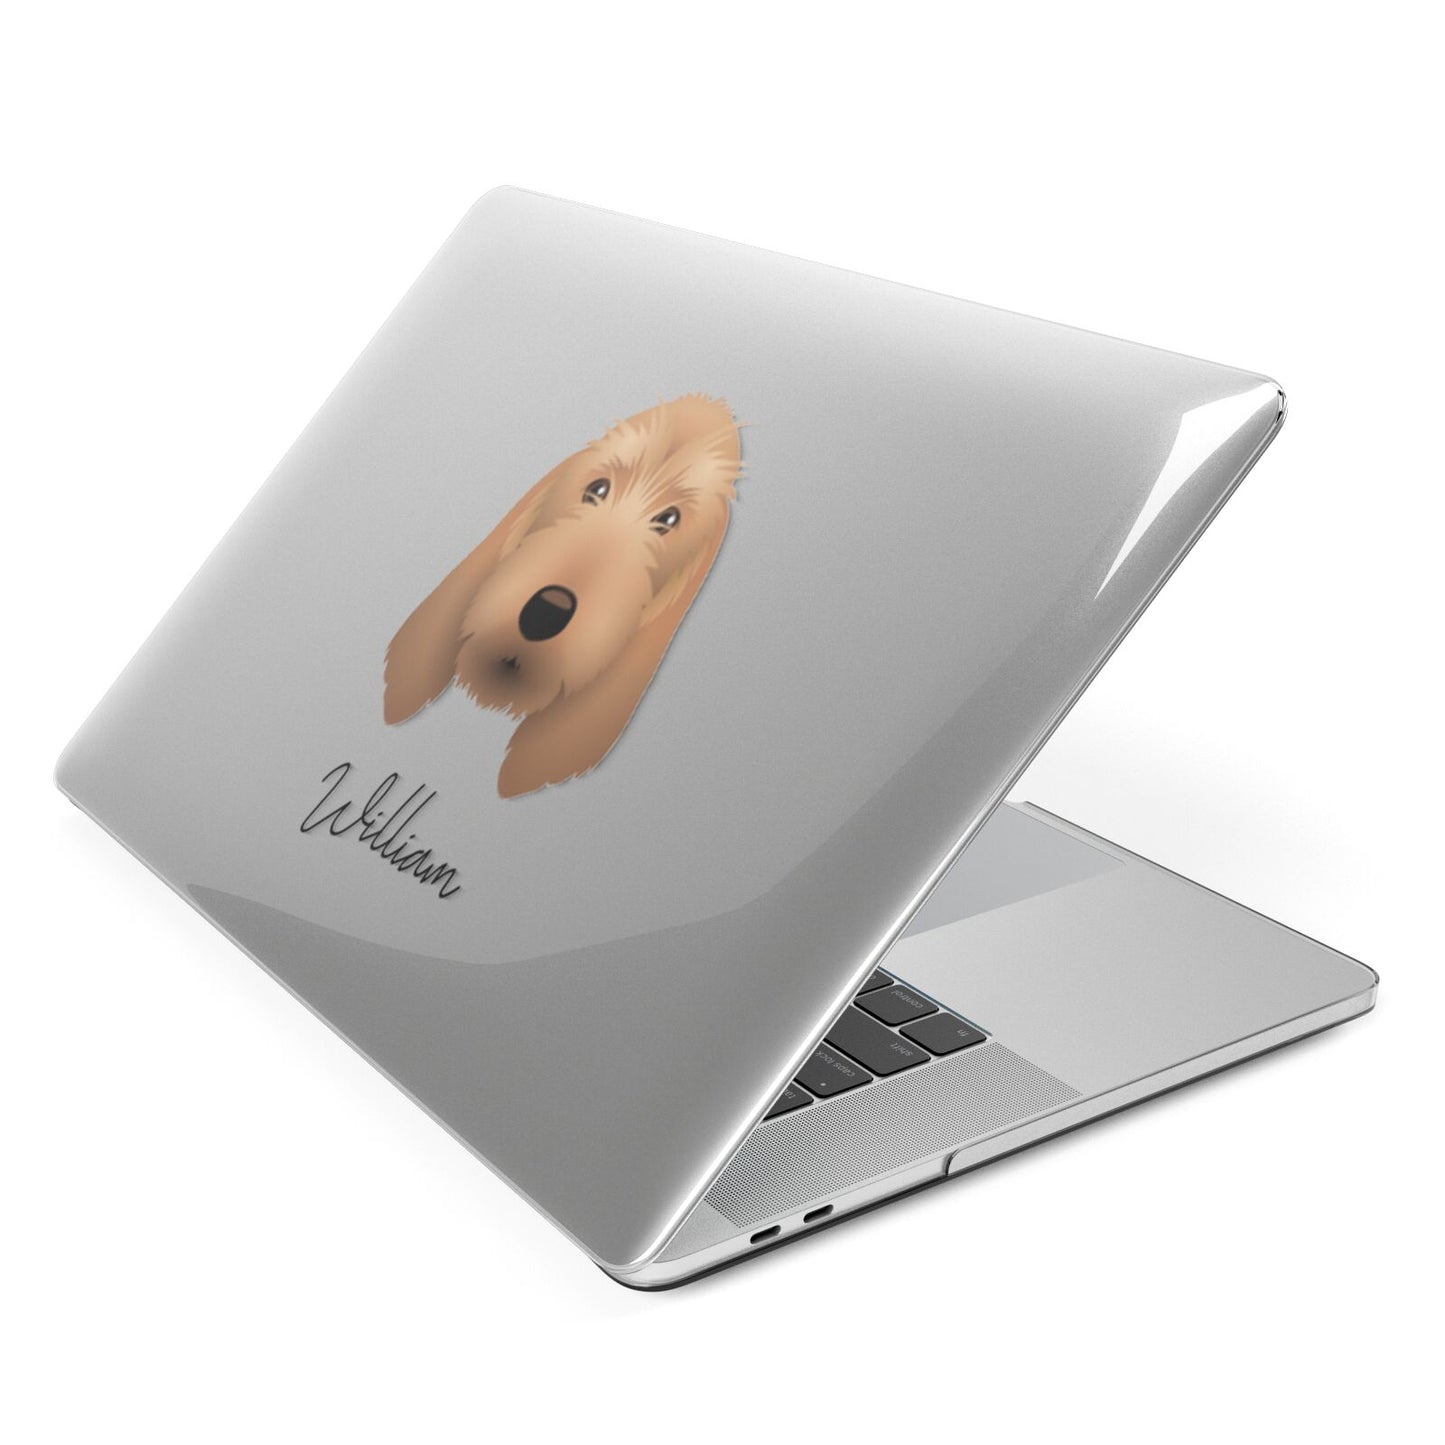 Basset Fauve De Bretagne Personalised Apple MacBook Case Side View